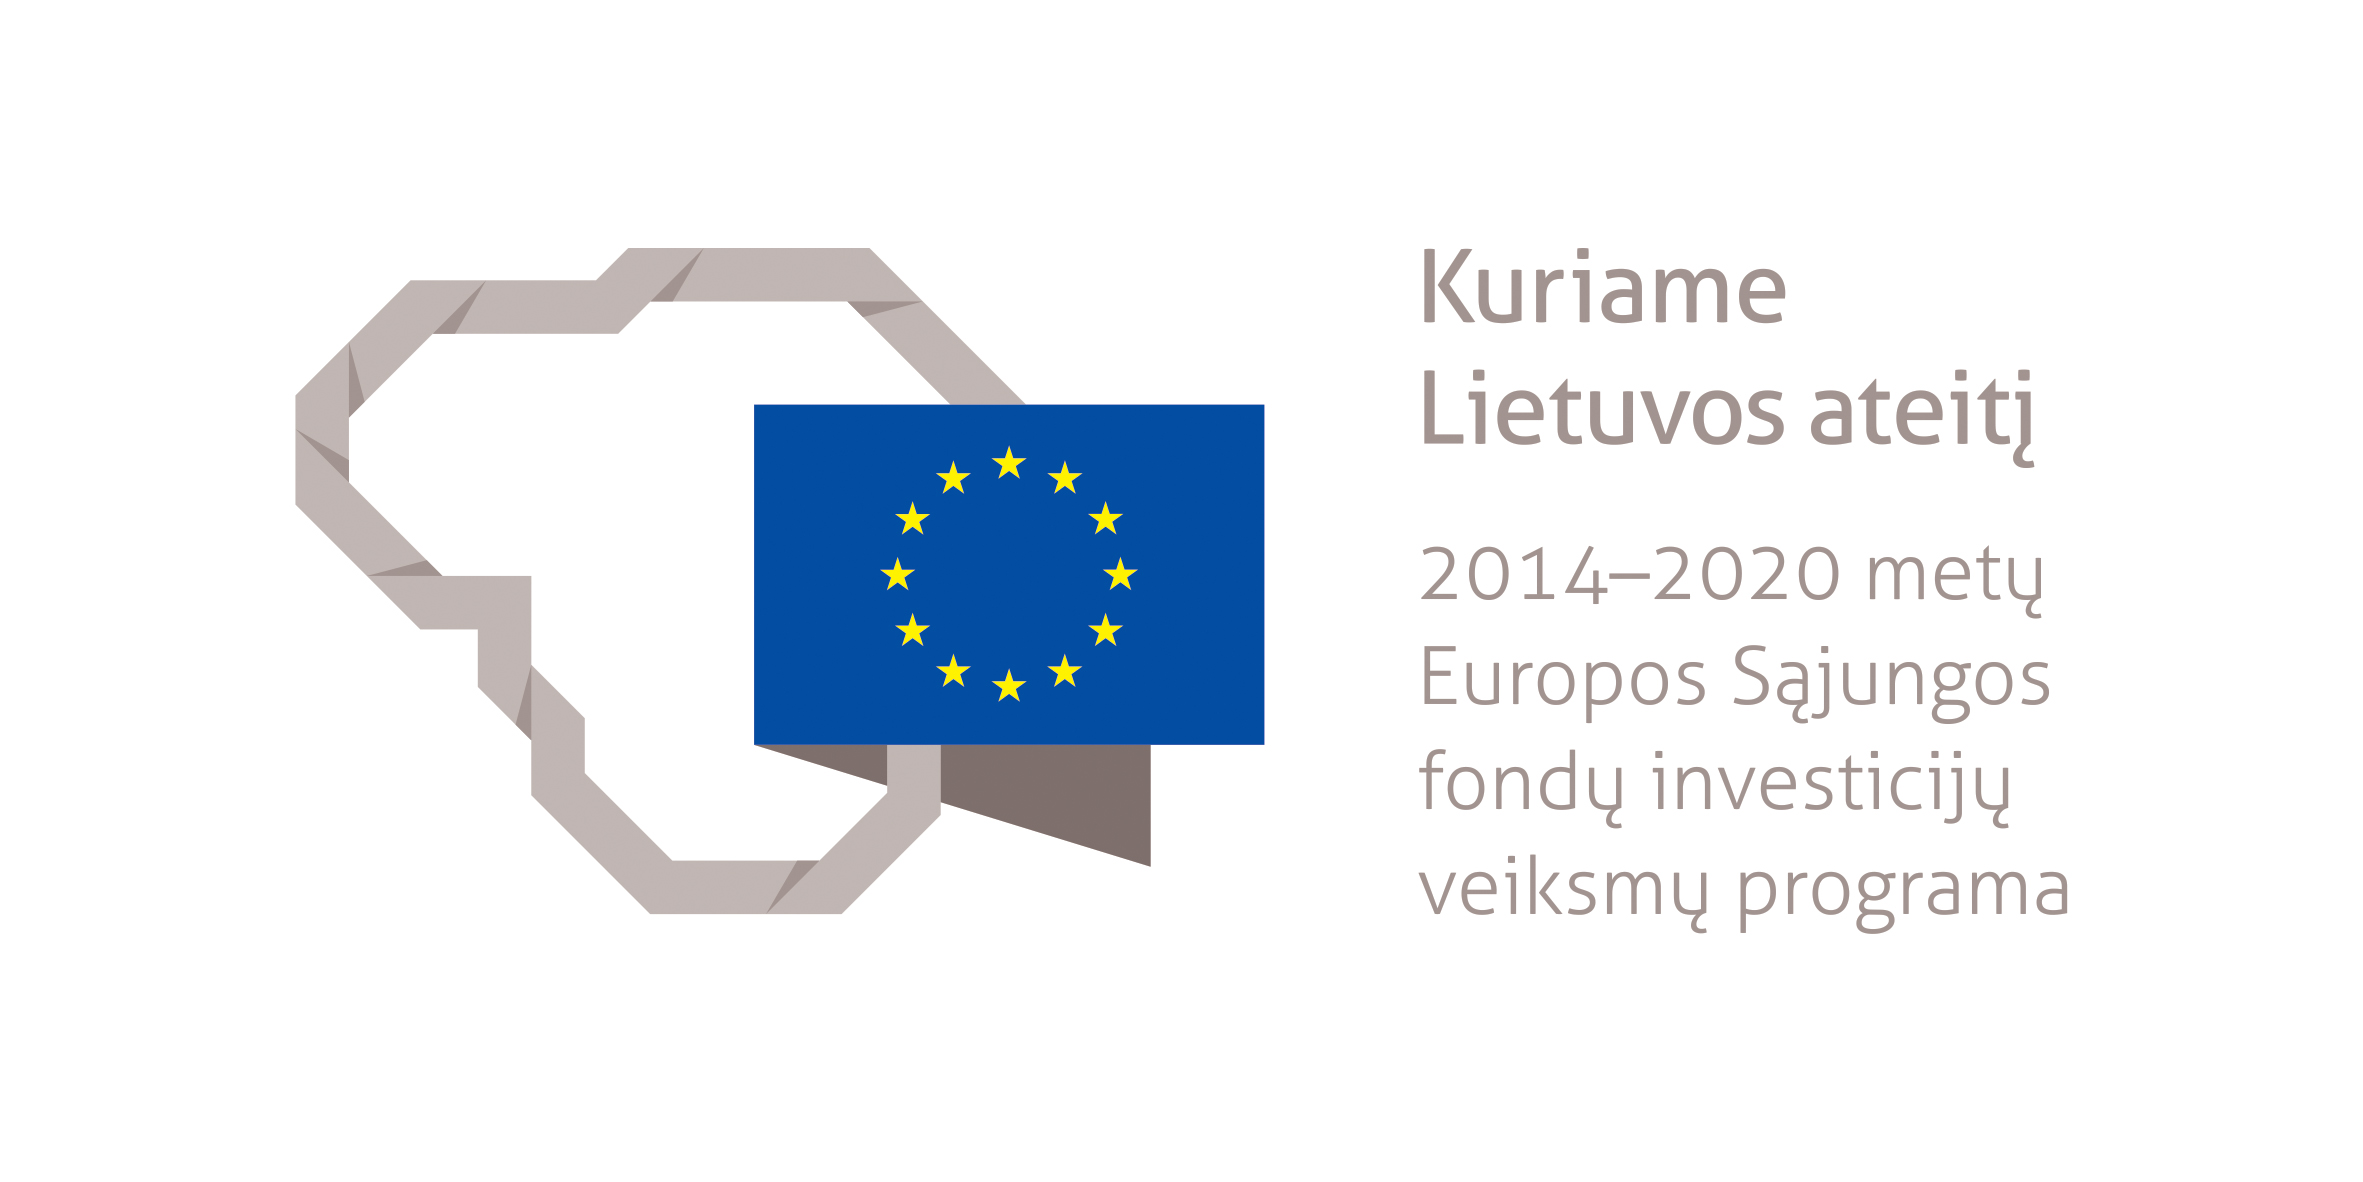 Projektas bendrai finansuotas iš Europos socialinio fondo lėšų (projekto nr. 09.3.3-LMT-K-712-25-0175) pagal dotacijos sutartį su Lietuvos mokslo taryba (LMTLT)